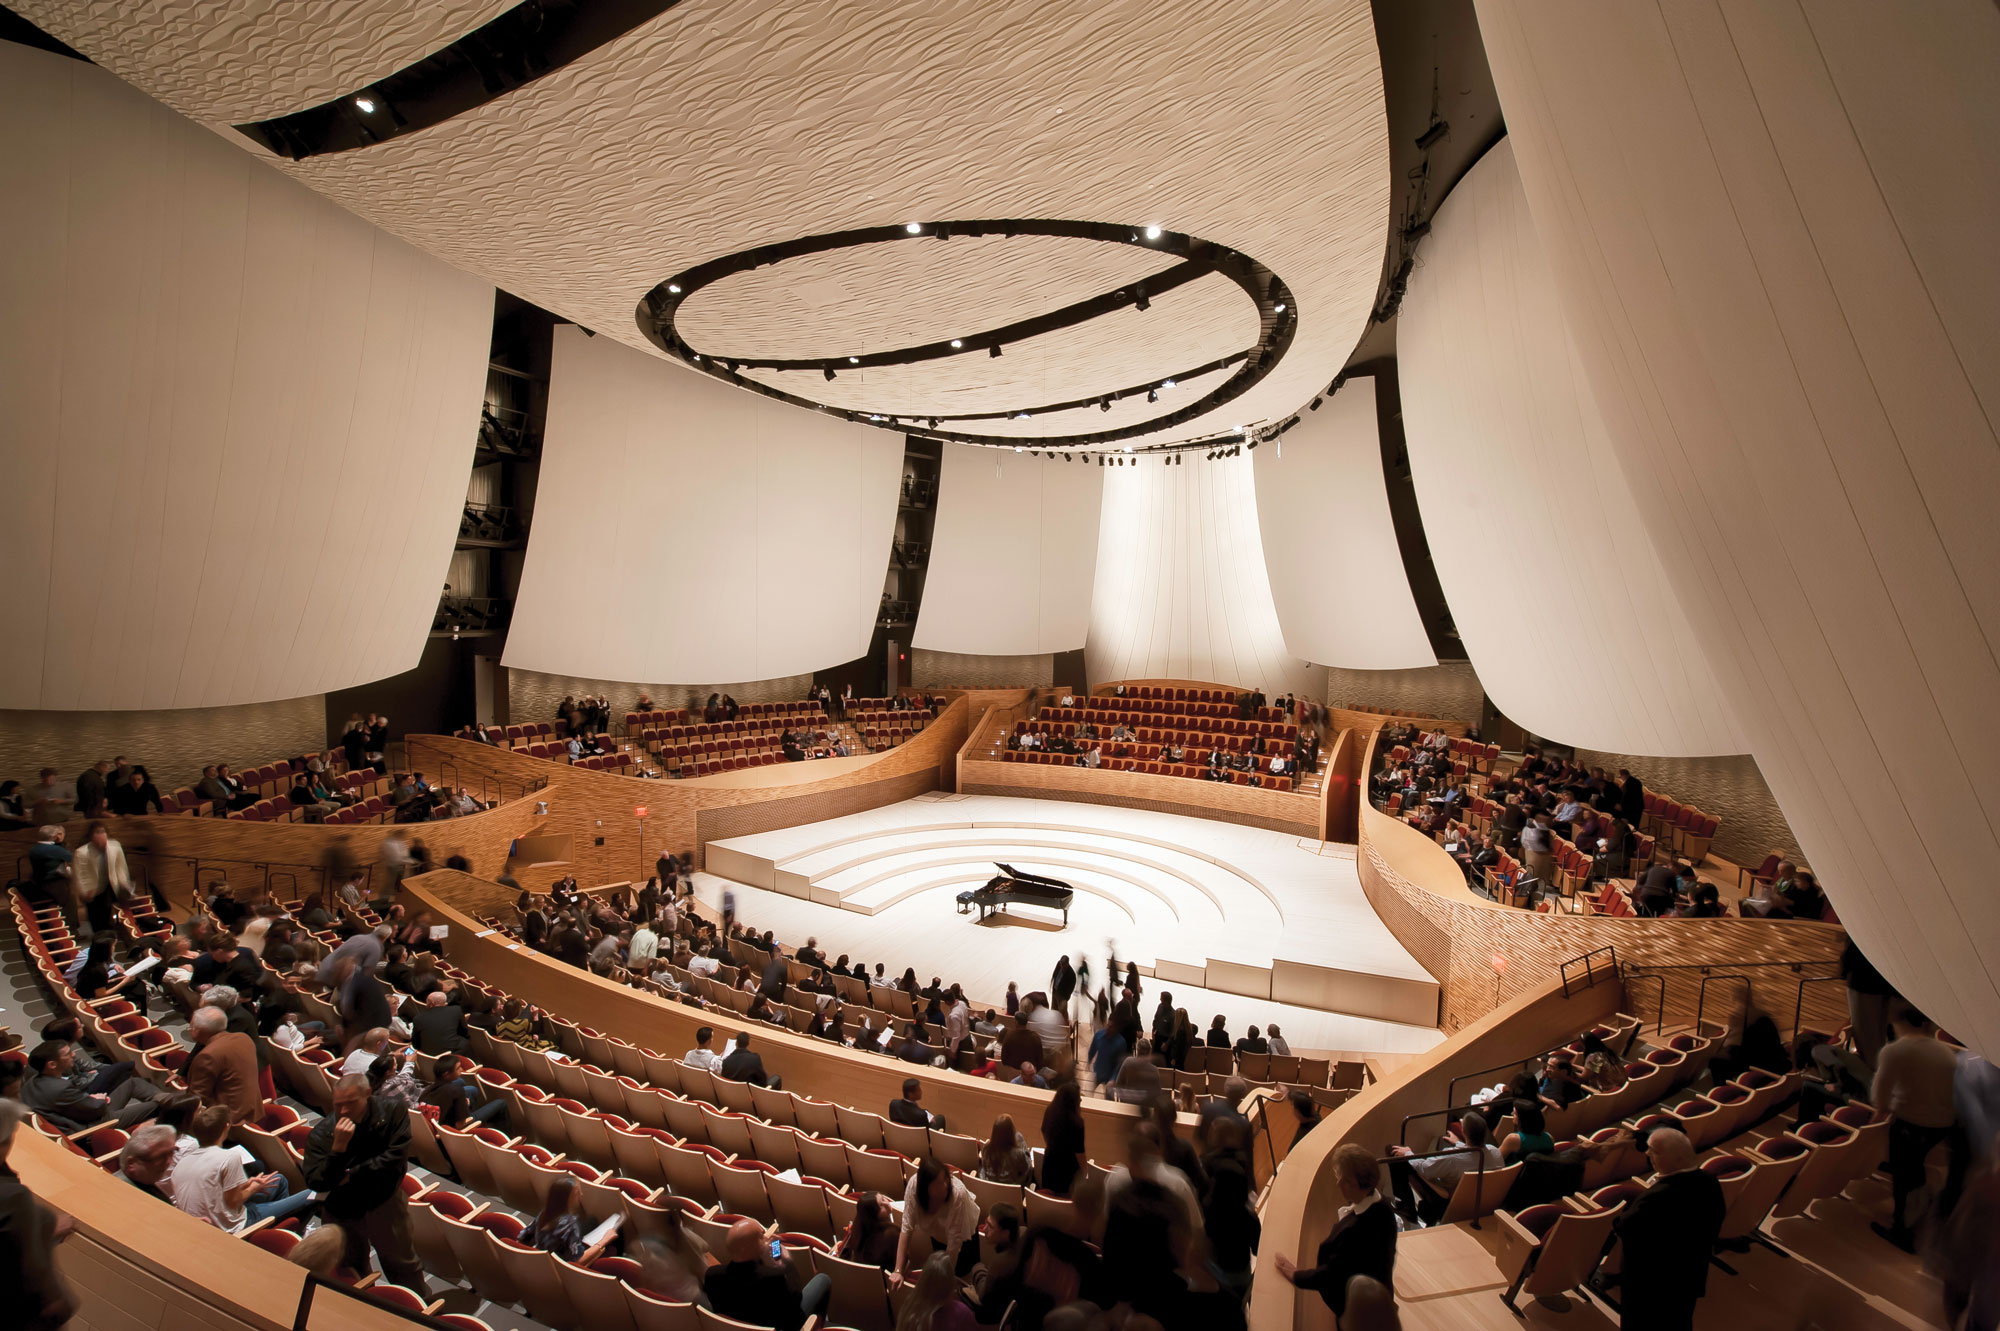 Вместимость самых больших концертных залов. Оперный театр Торонто. Турция концертный зал Аудиториум. Стэнфордский концертный зал. Интерьер современного театра.